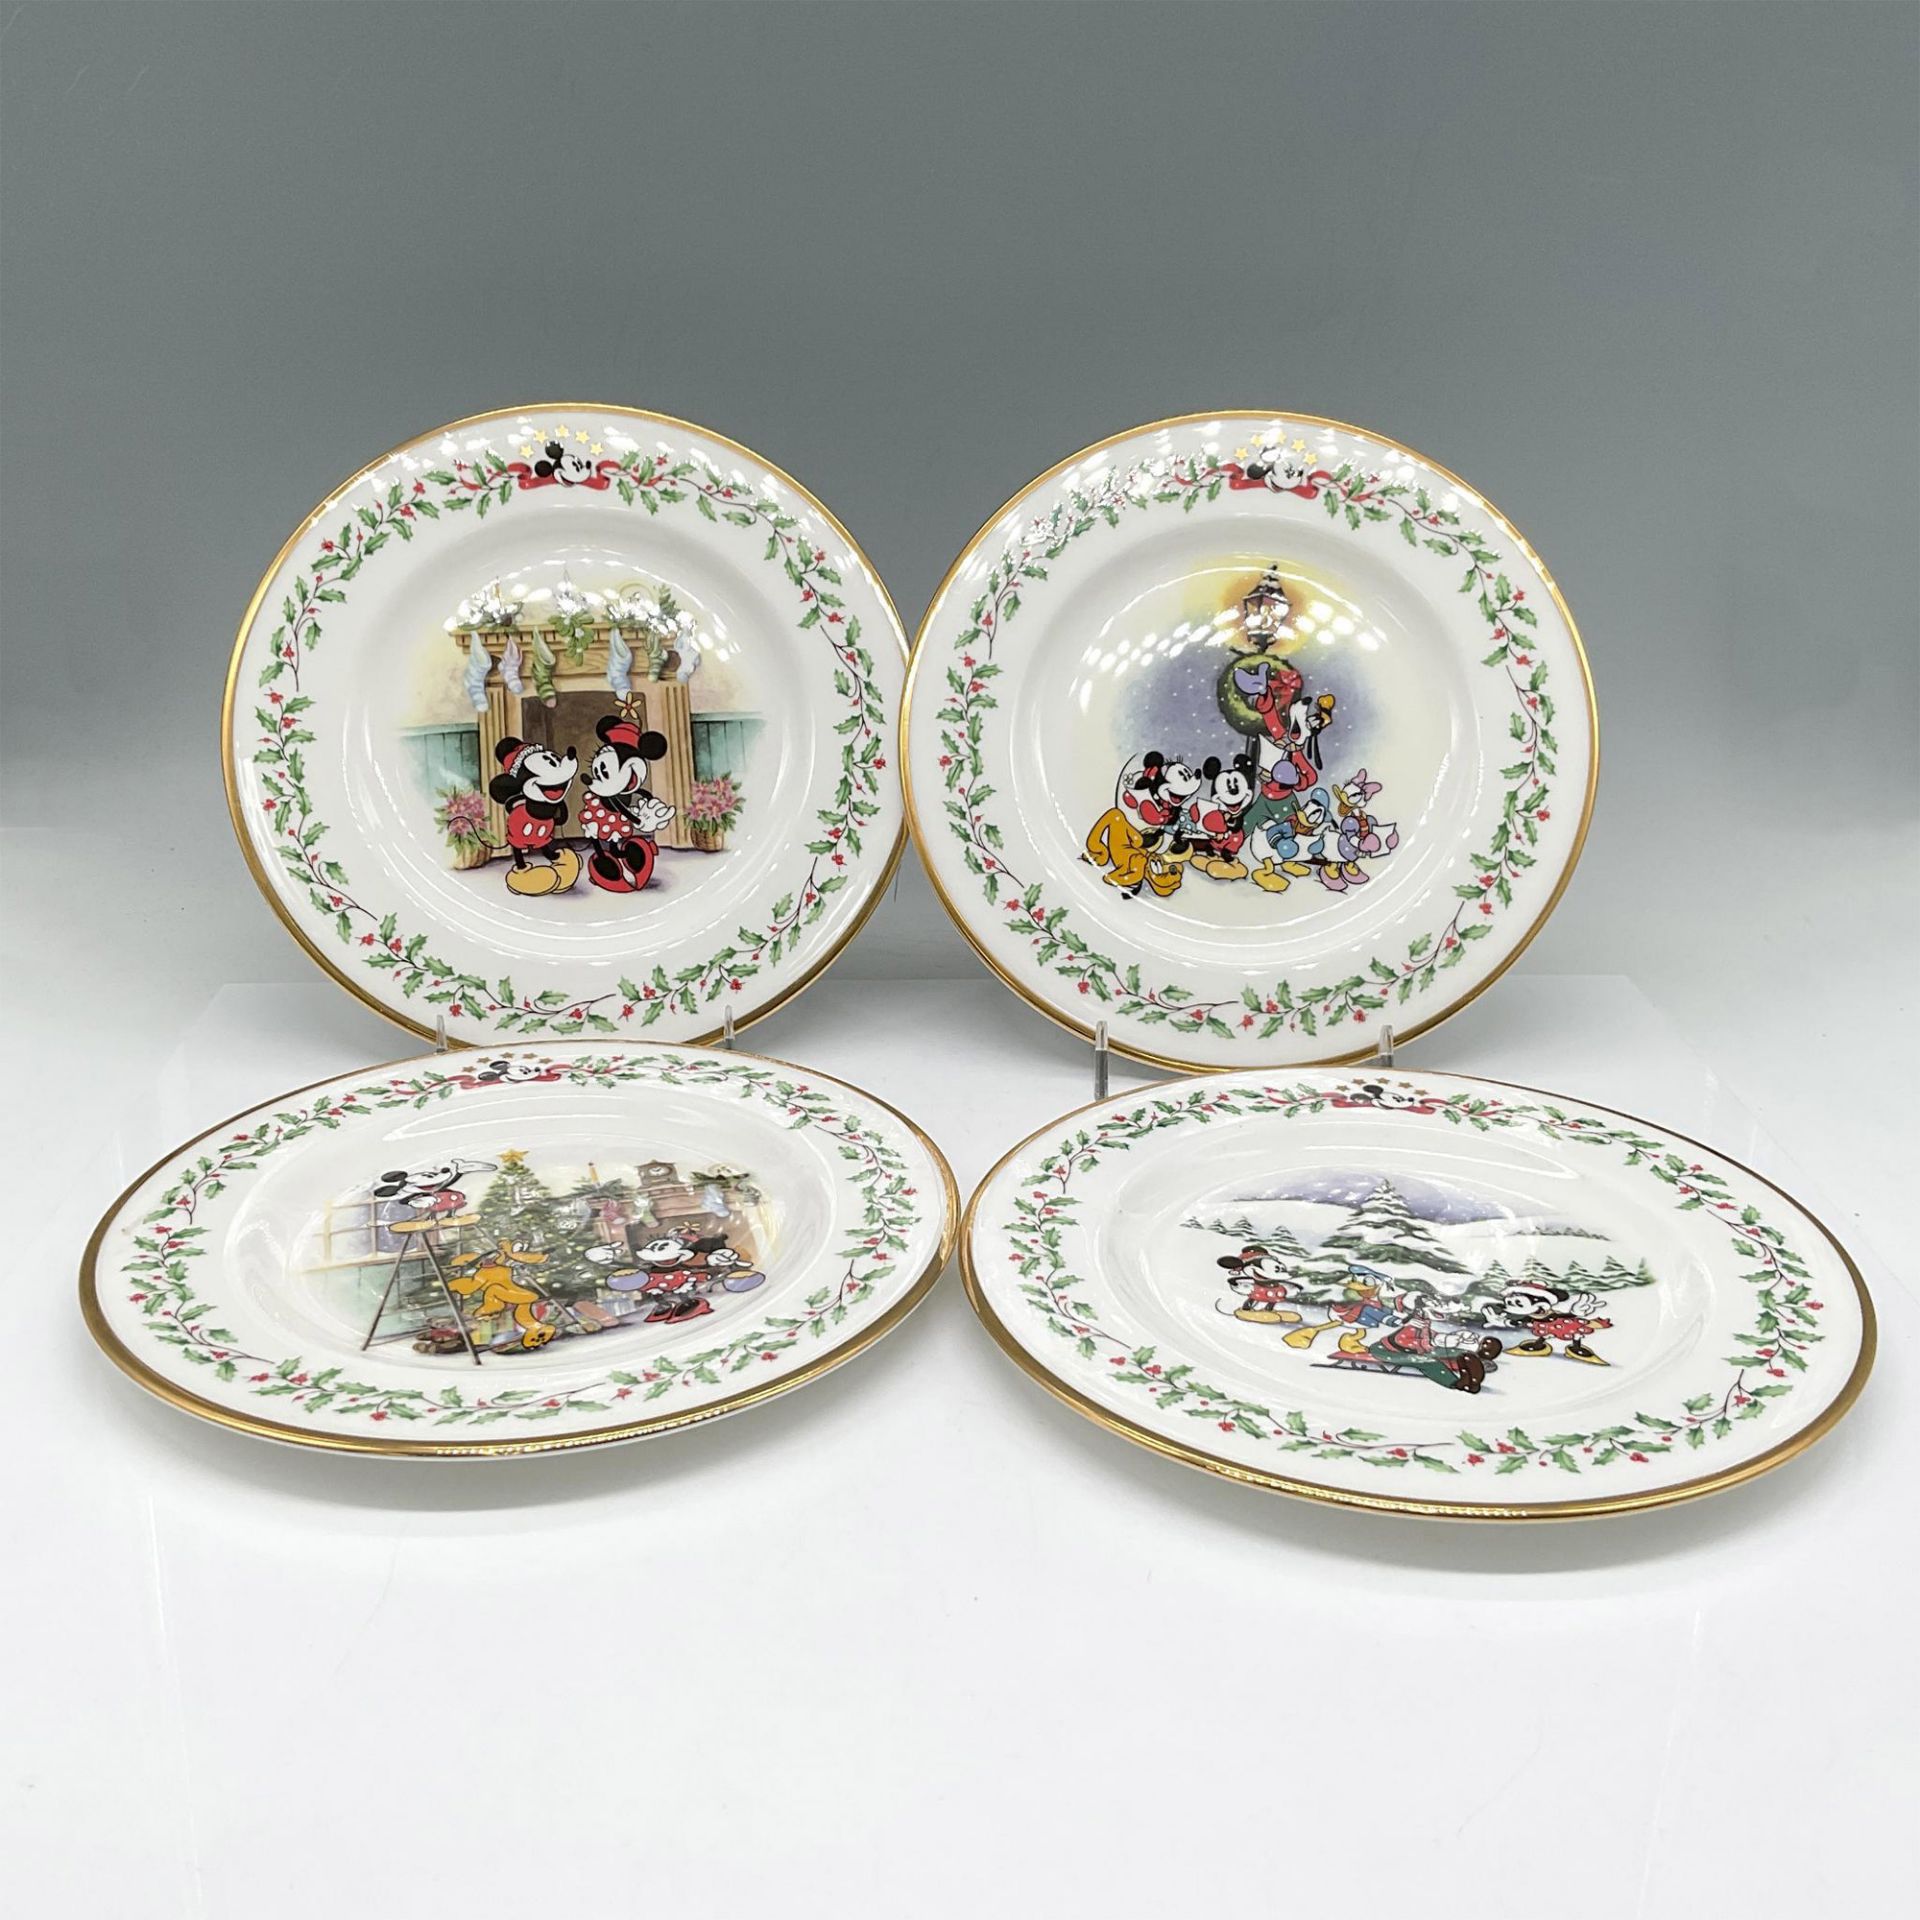 4pc Lenox Bone China Holiday Plates by Disney, Mickey & Co. - Image 2 of 3